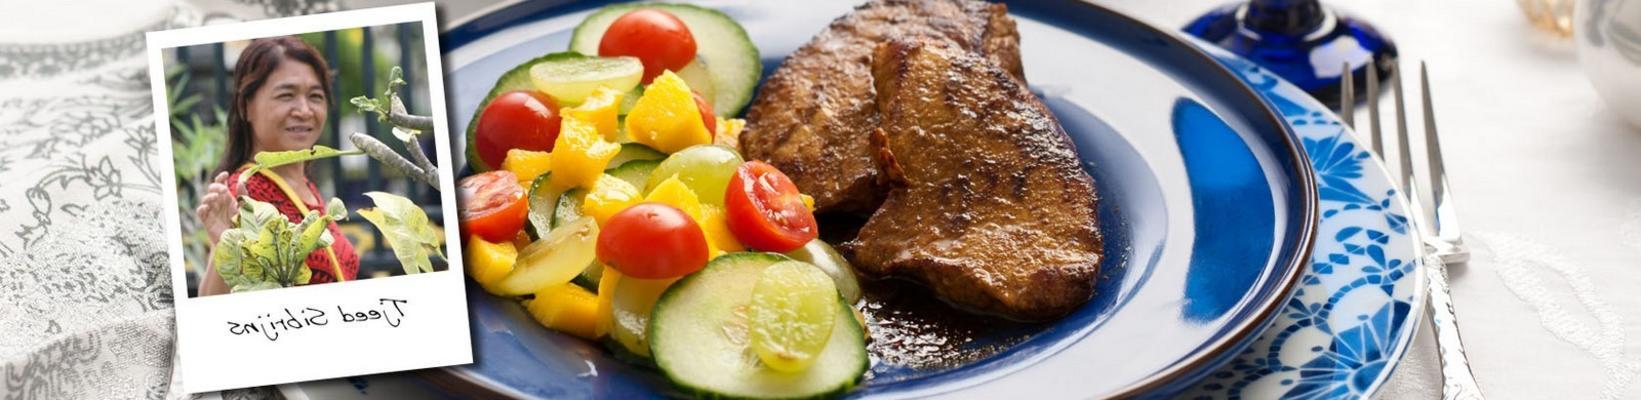 thai pork steaks and tjeed sibrijns salad